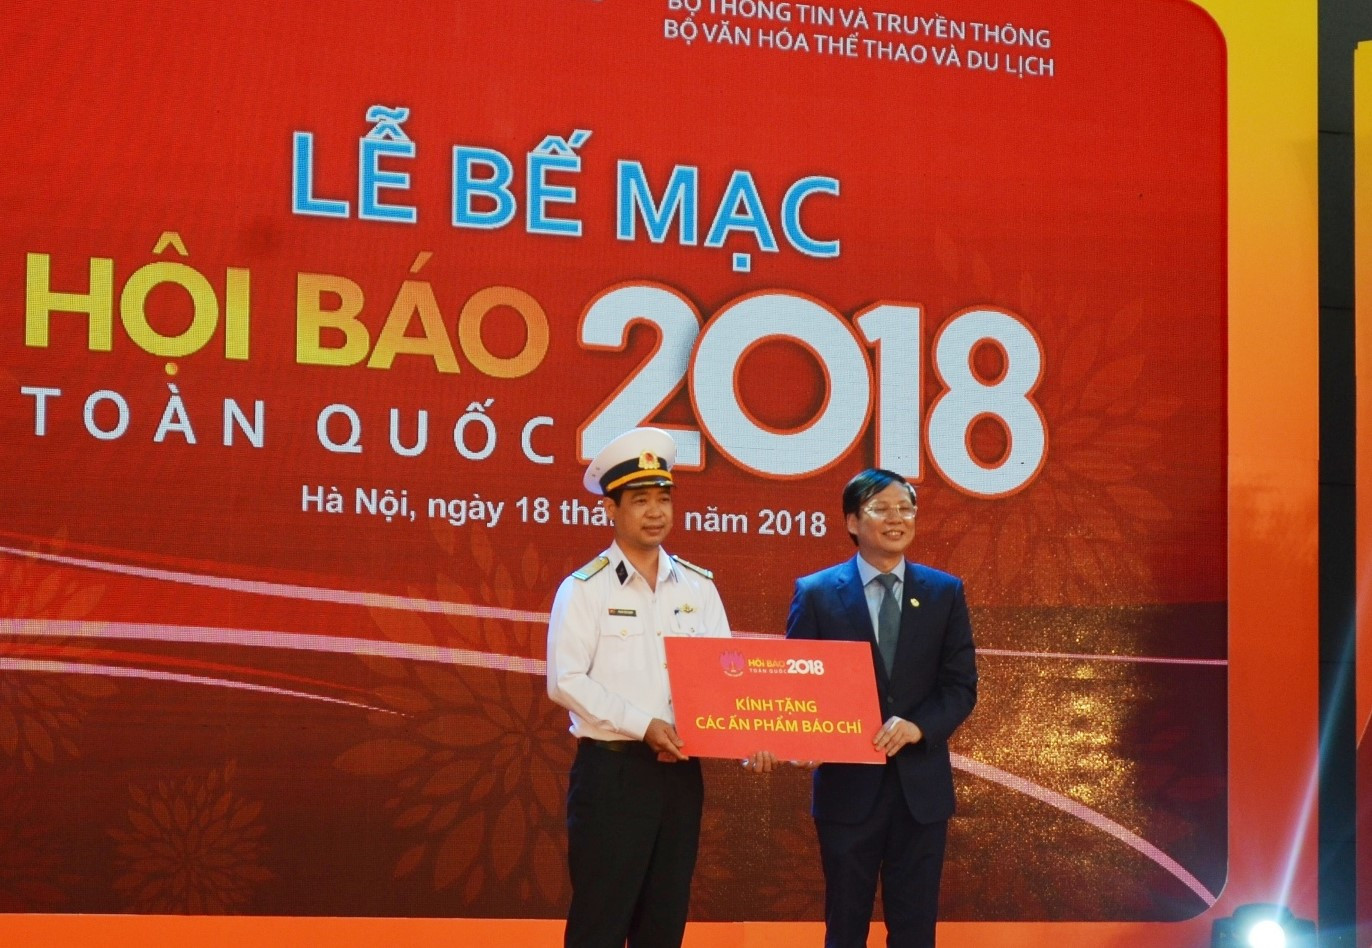 Toàn bộ ấn phẩm báo chí tại Hội báo toàn quốc 2018 được trao tặng cho Bộ đội Hải quân Việt Nam. Ảnh: Như Biển.